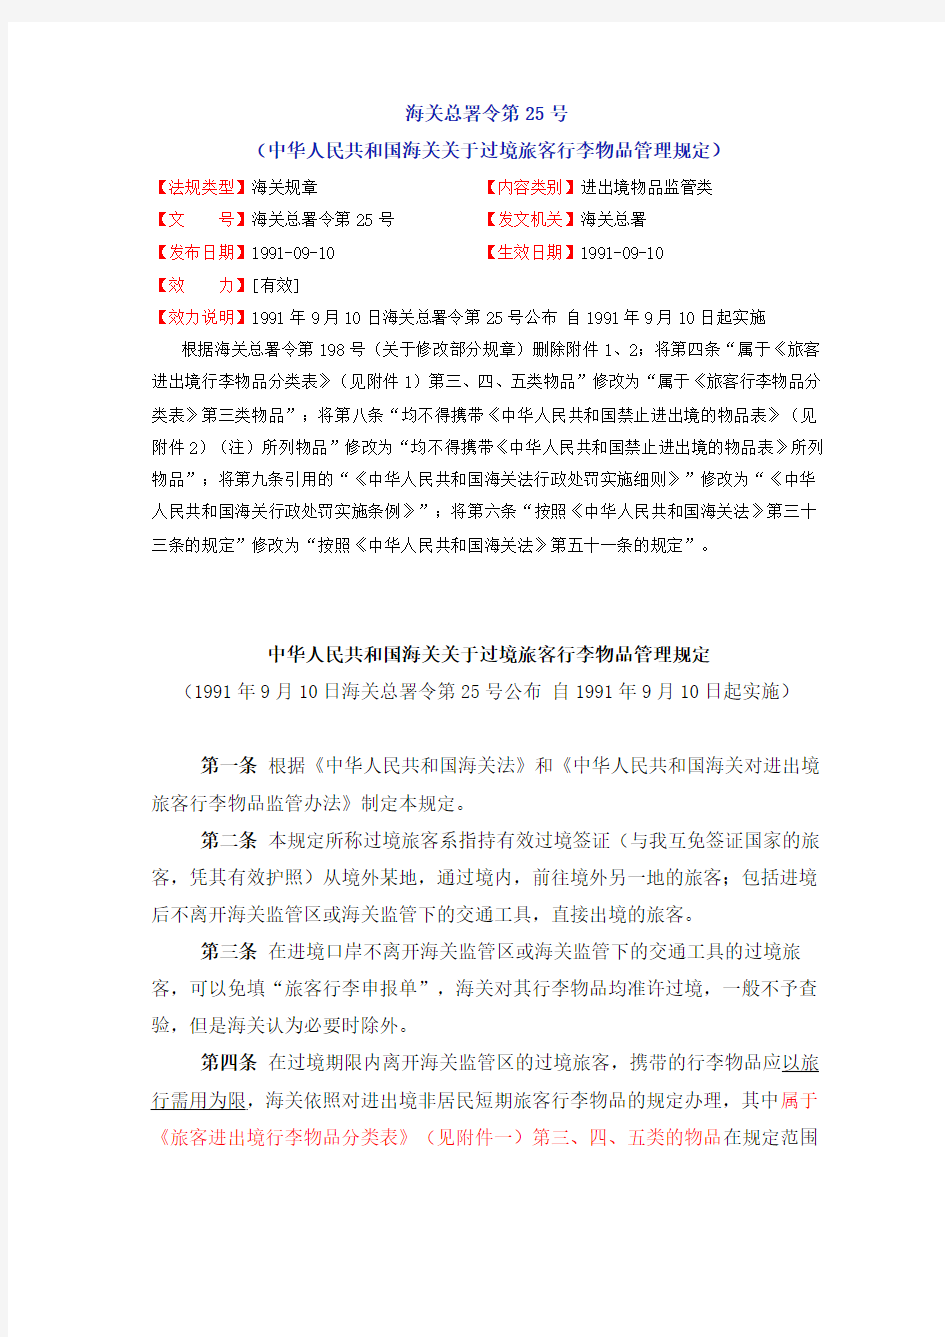 (海关总署令第025号)中华人民共和国海关关于过境旅客行李物品管理规定